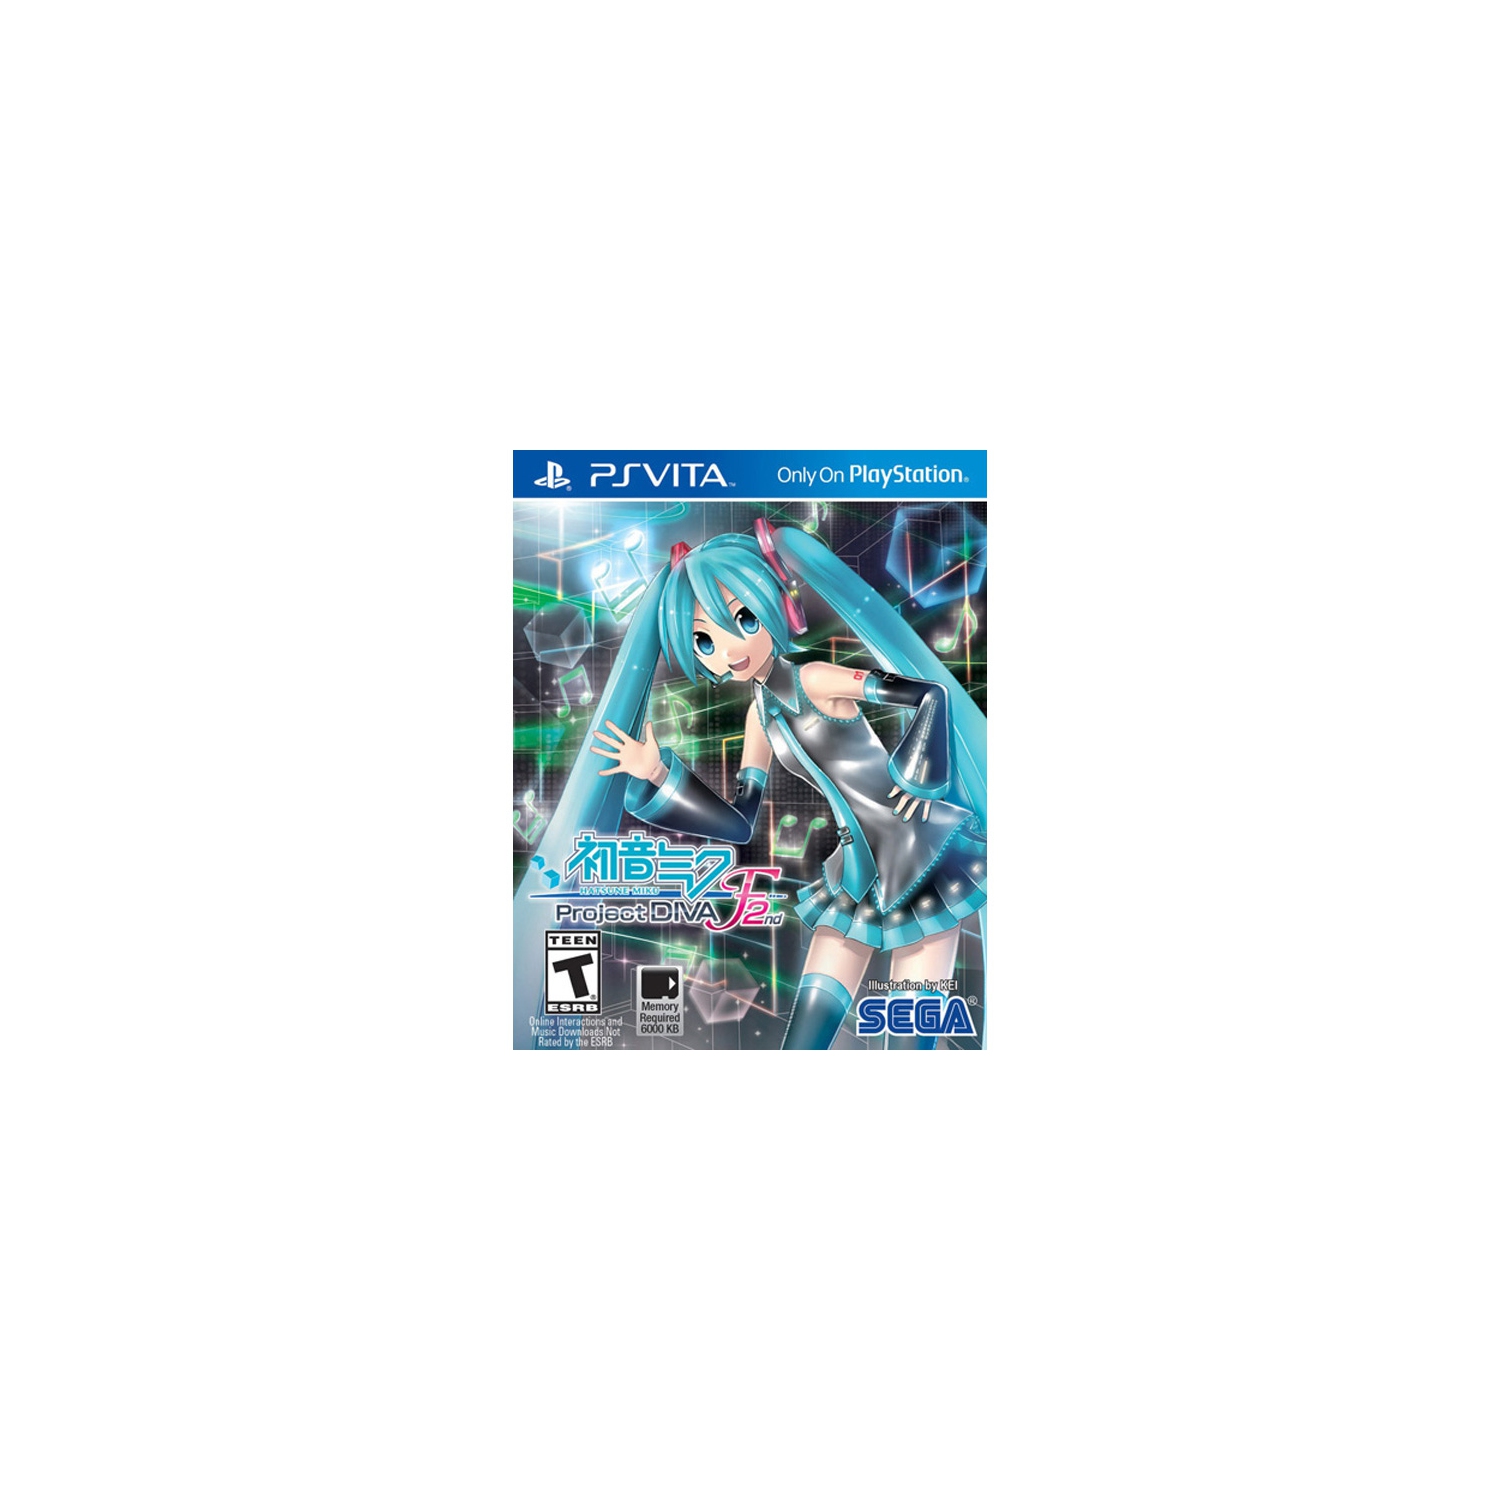 Hatsune Miku Project Diva F 2Nd (Playstation Vita)